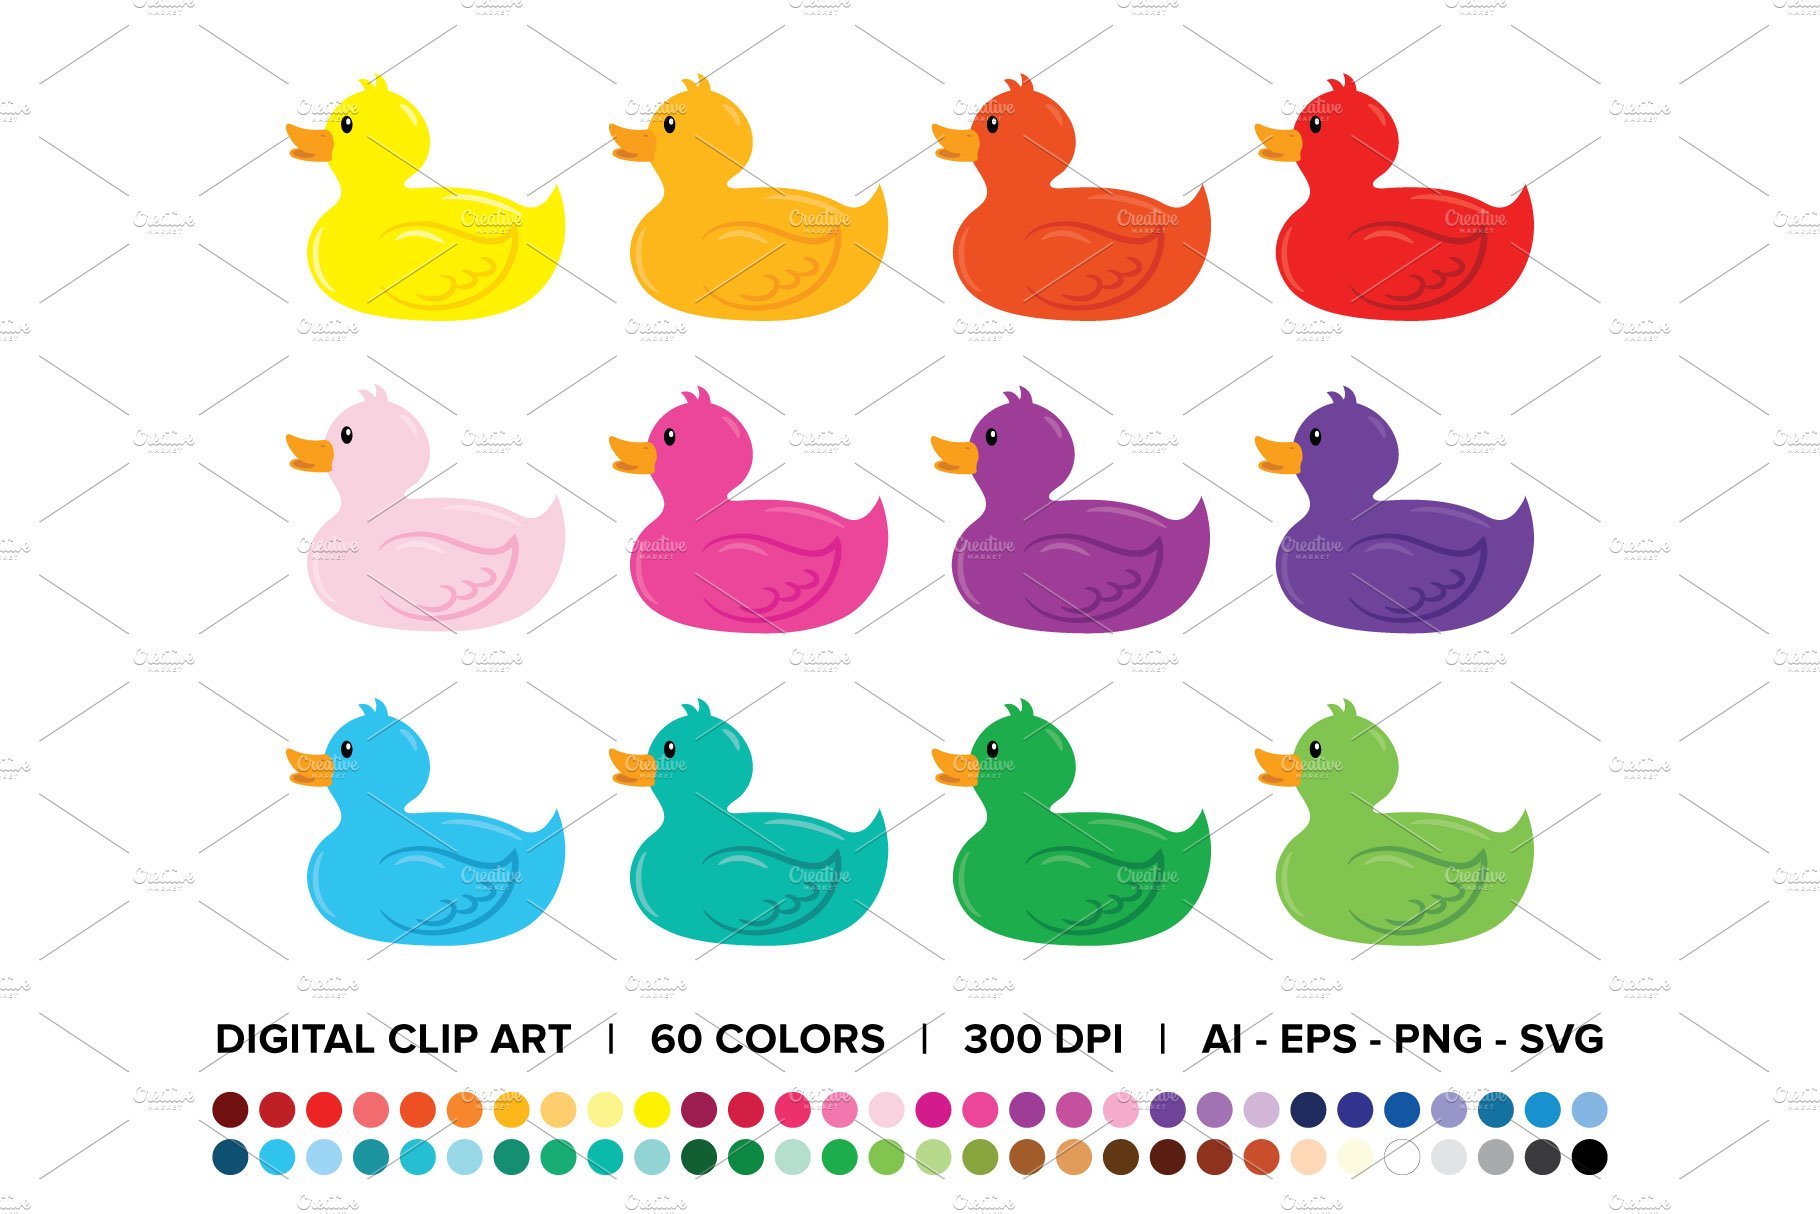 Rubber Duck Clip Art Set cover image.